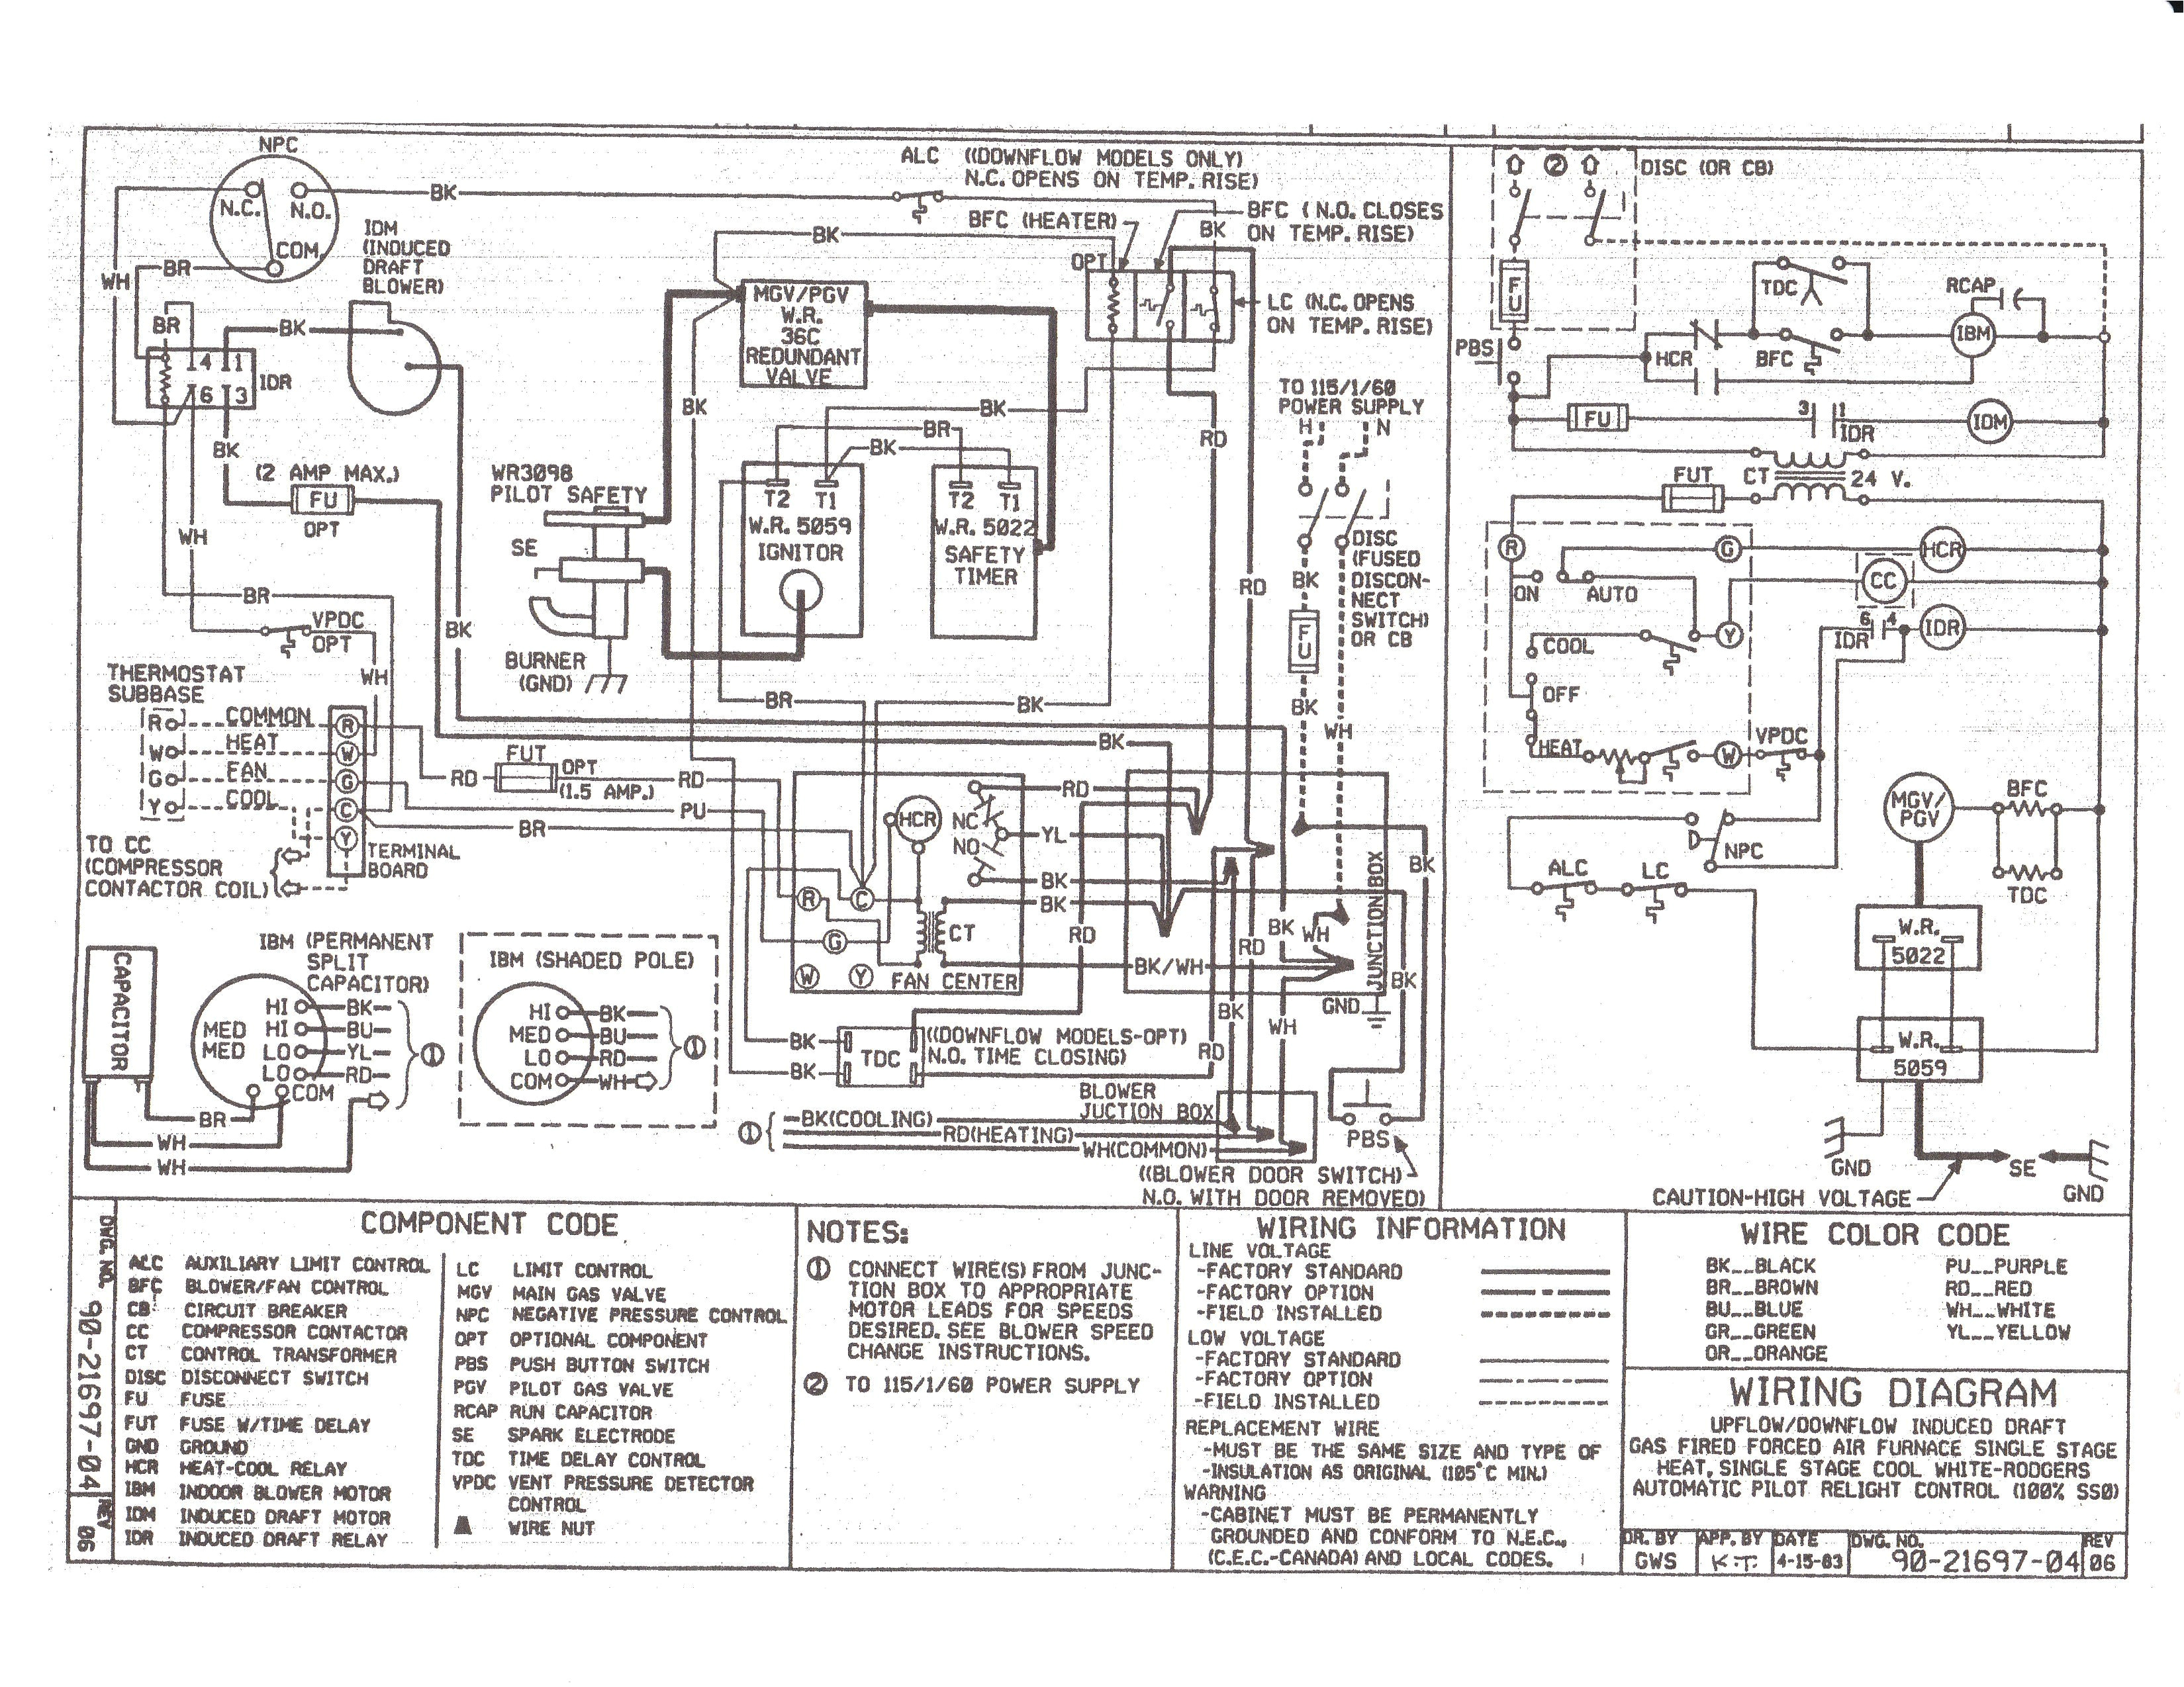 york wiring schematics schema diagram database york electric furnace wiring diagram